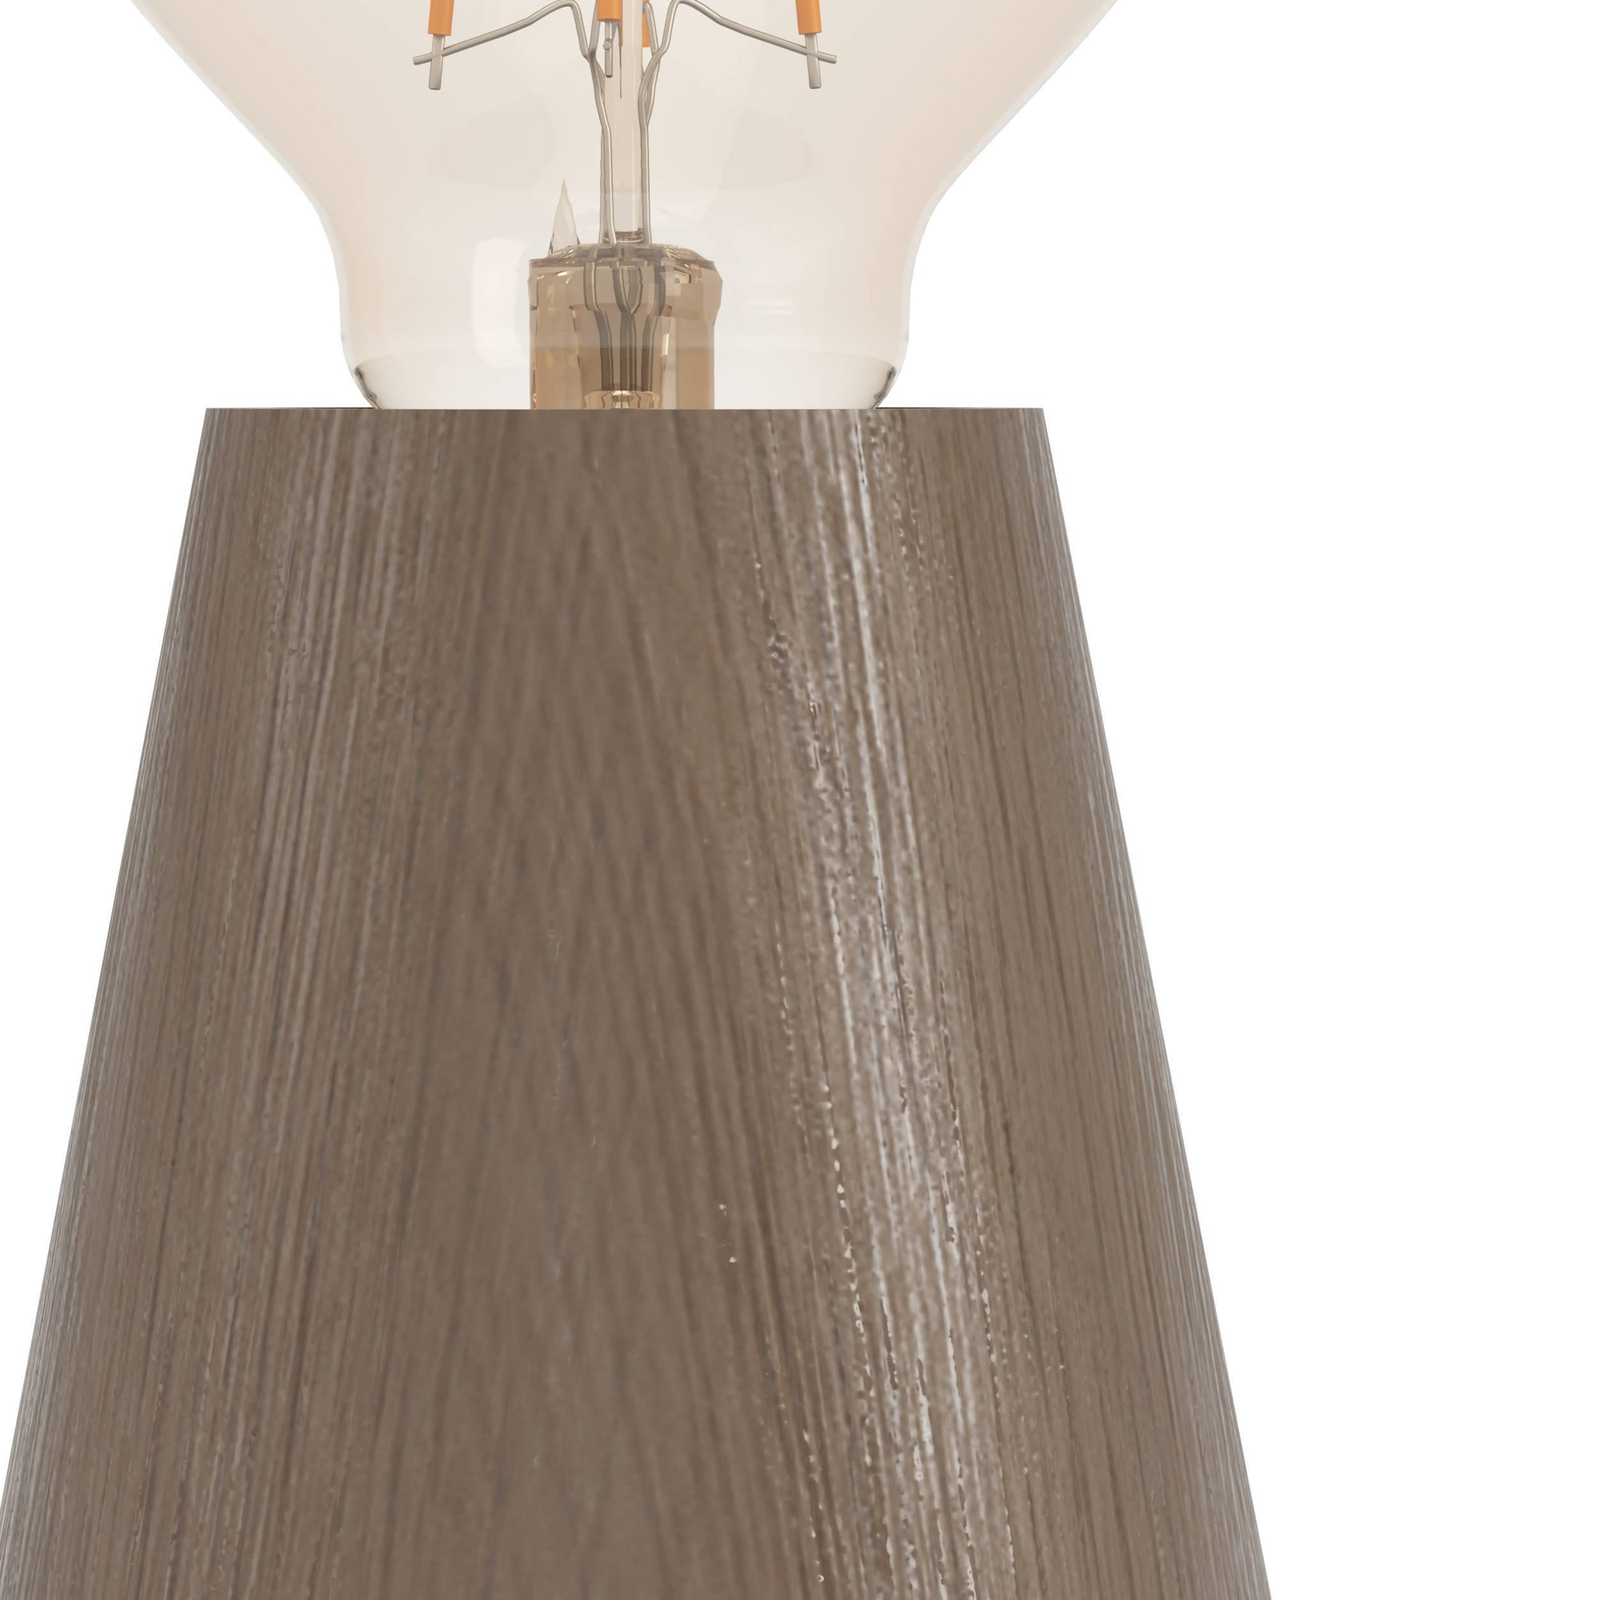 Stolní lampa Asby, tmavé dřevo, výška 10 cm, dřevo